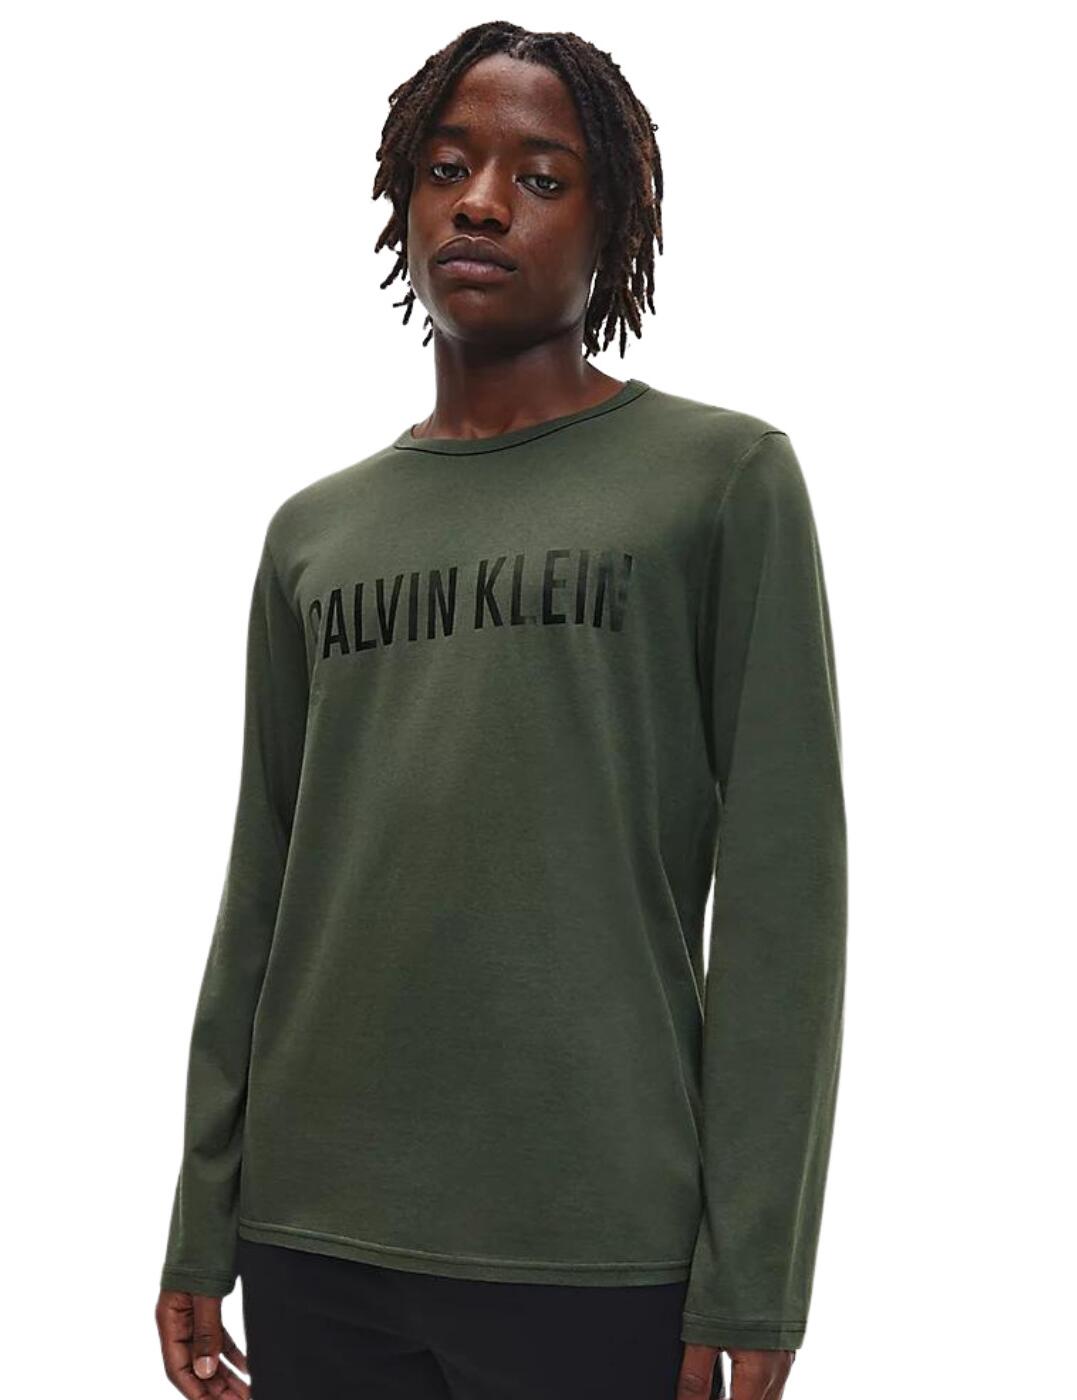 Calvin Klein Intense Power Long Sleeved Crew Neck New Slate